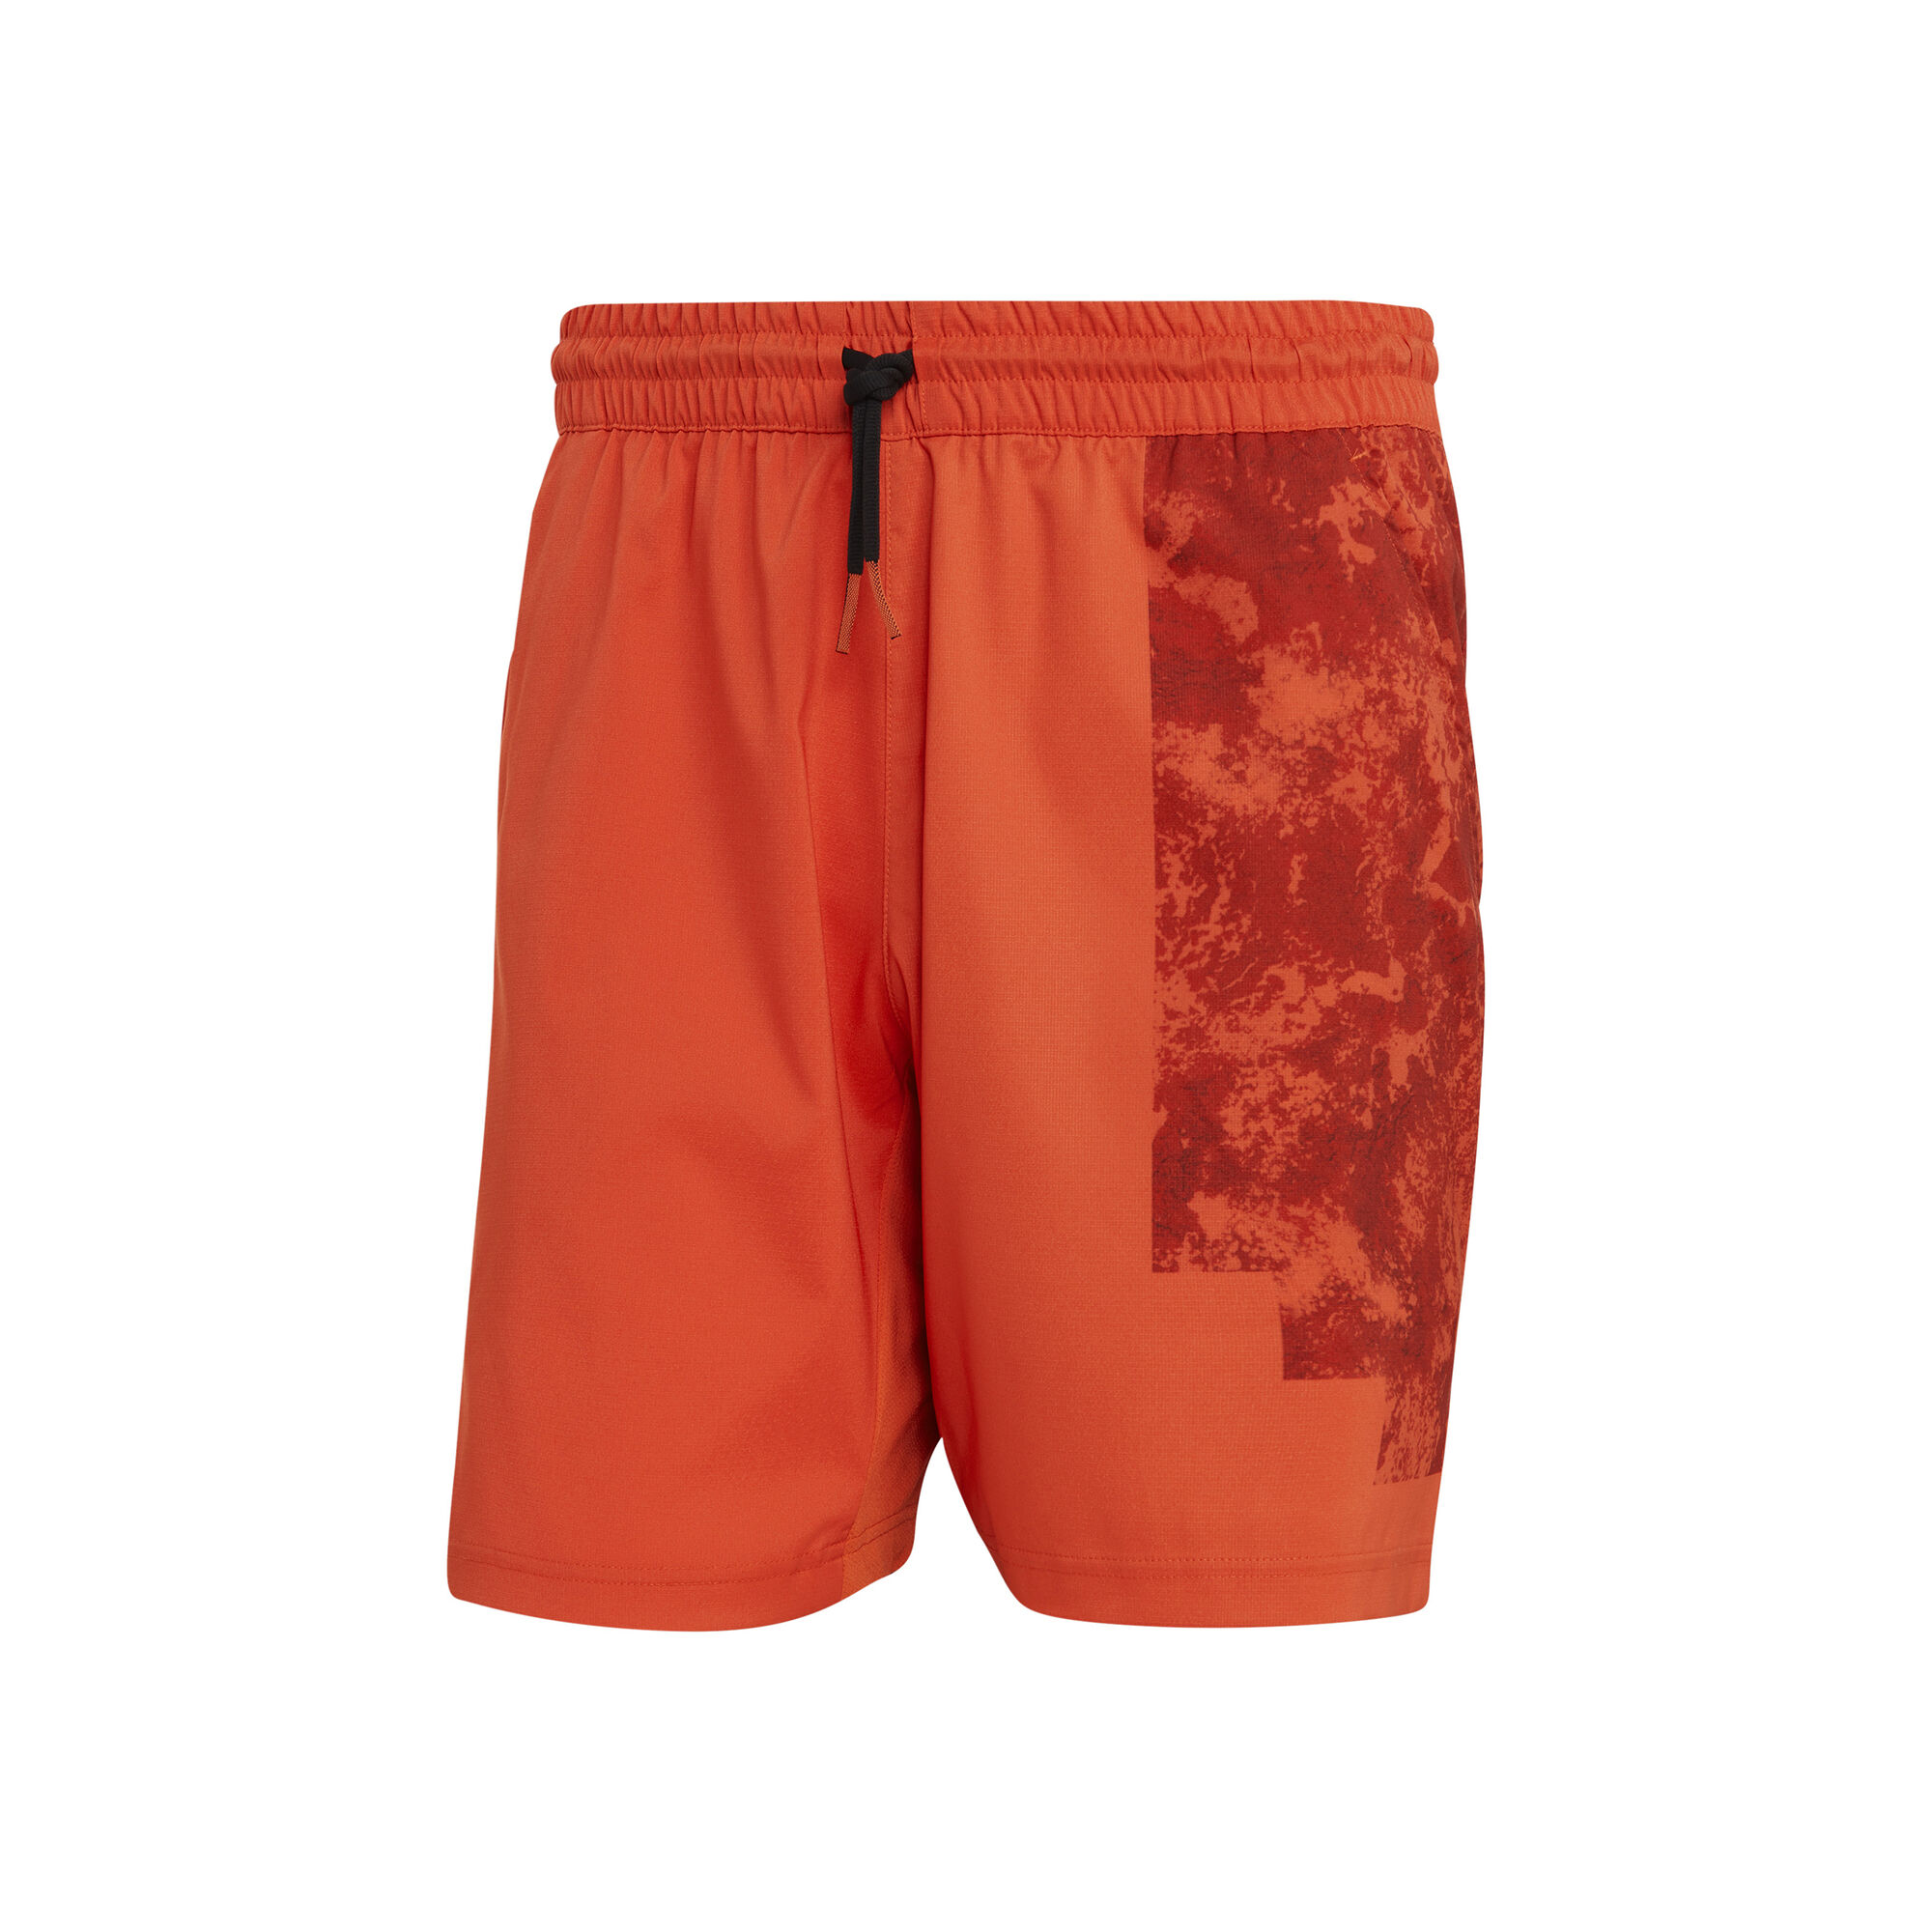 Paris Ergo Shorts Men - Orange, Red